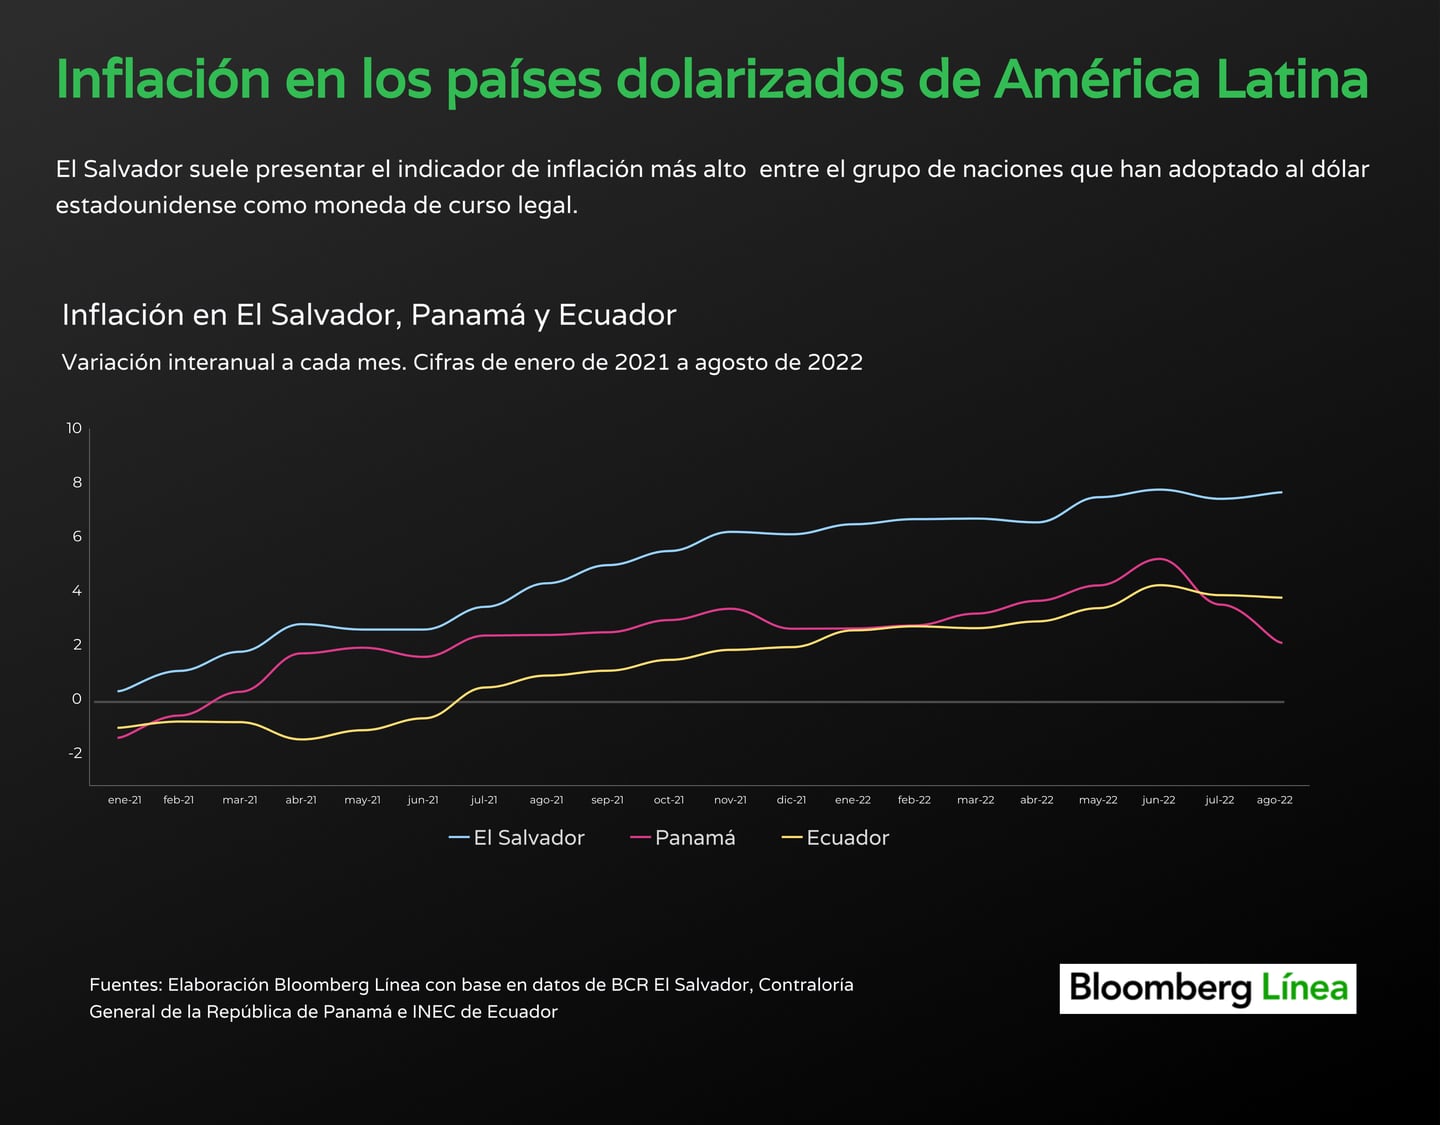 Inflación en El Salvador, Panamá y Ecuador, países dolarizados de América Latina, a agosto de 2022.dfd